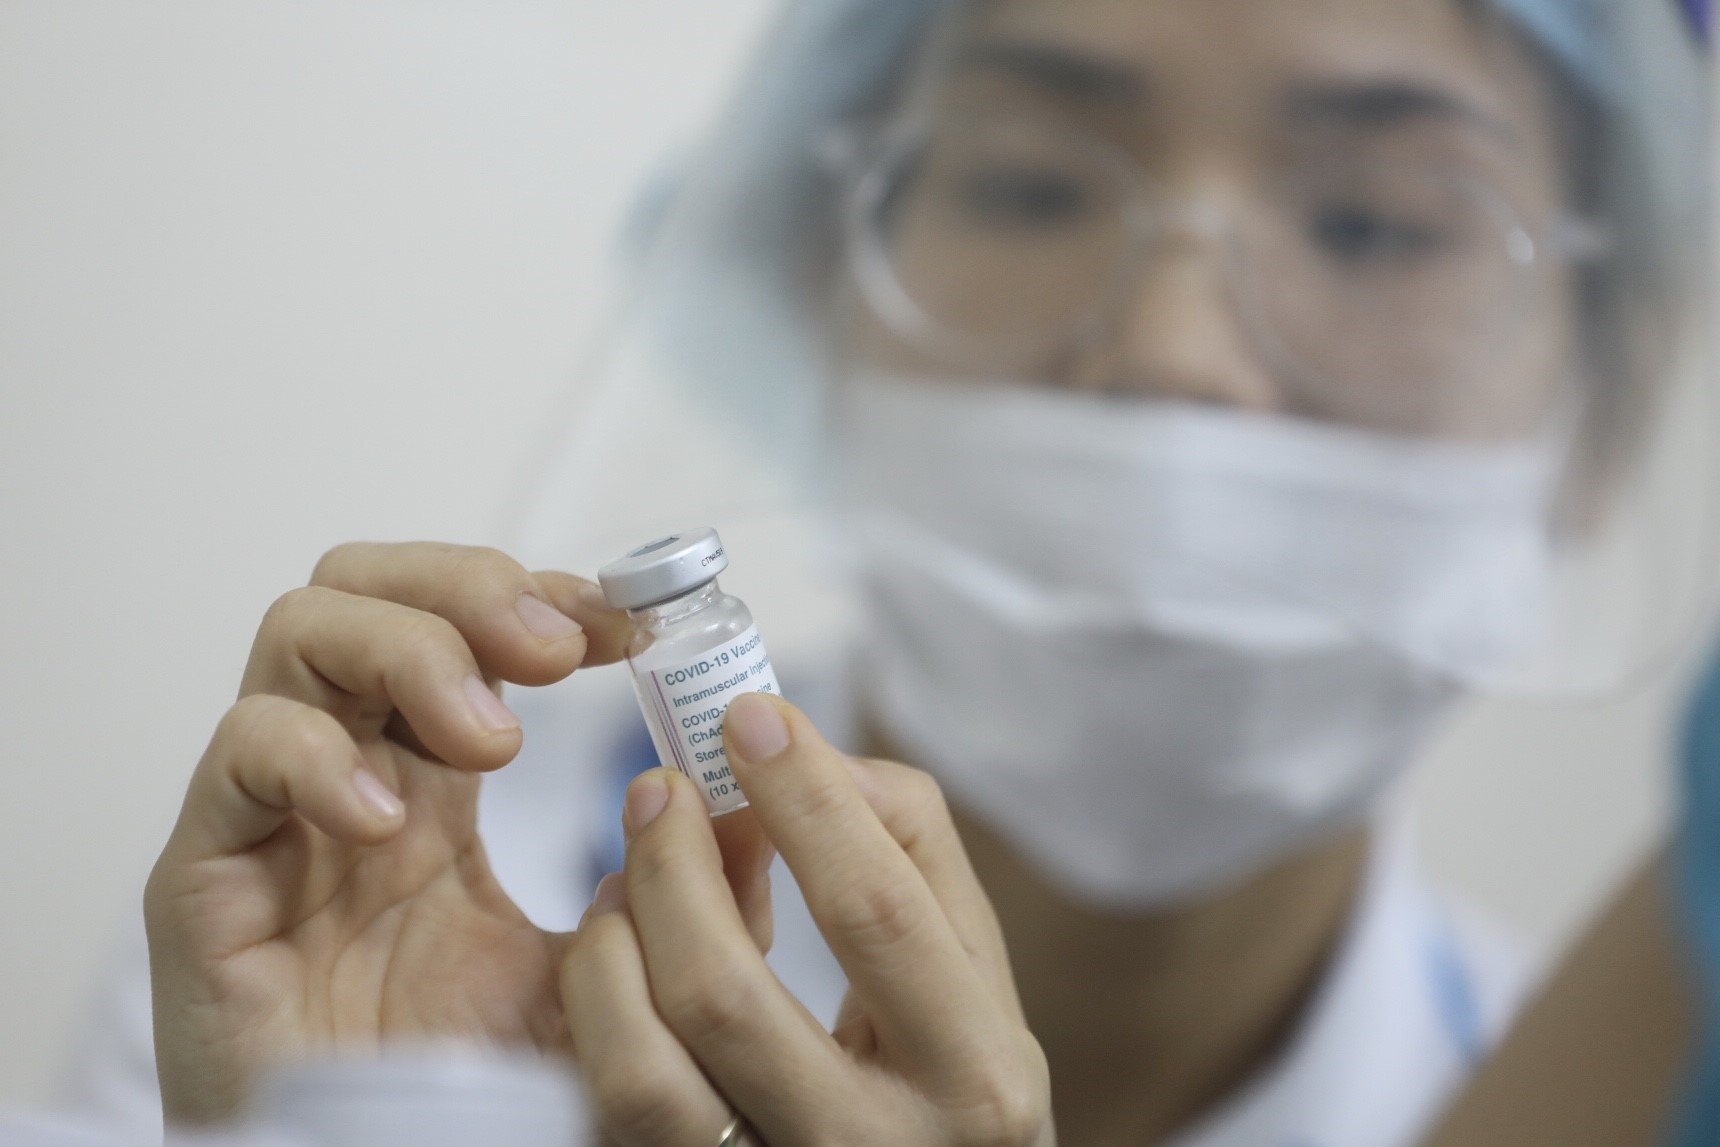 Le personnel médical participant directement à la prévention et à la
lutte contre le COVID-19 dans l’hôpital Thanh Nhan, se fait vacciner
contre le COVID-19. Photo: VNA